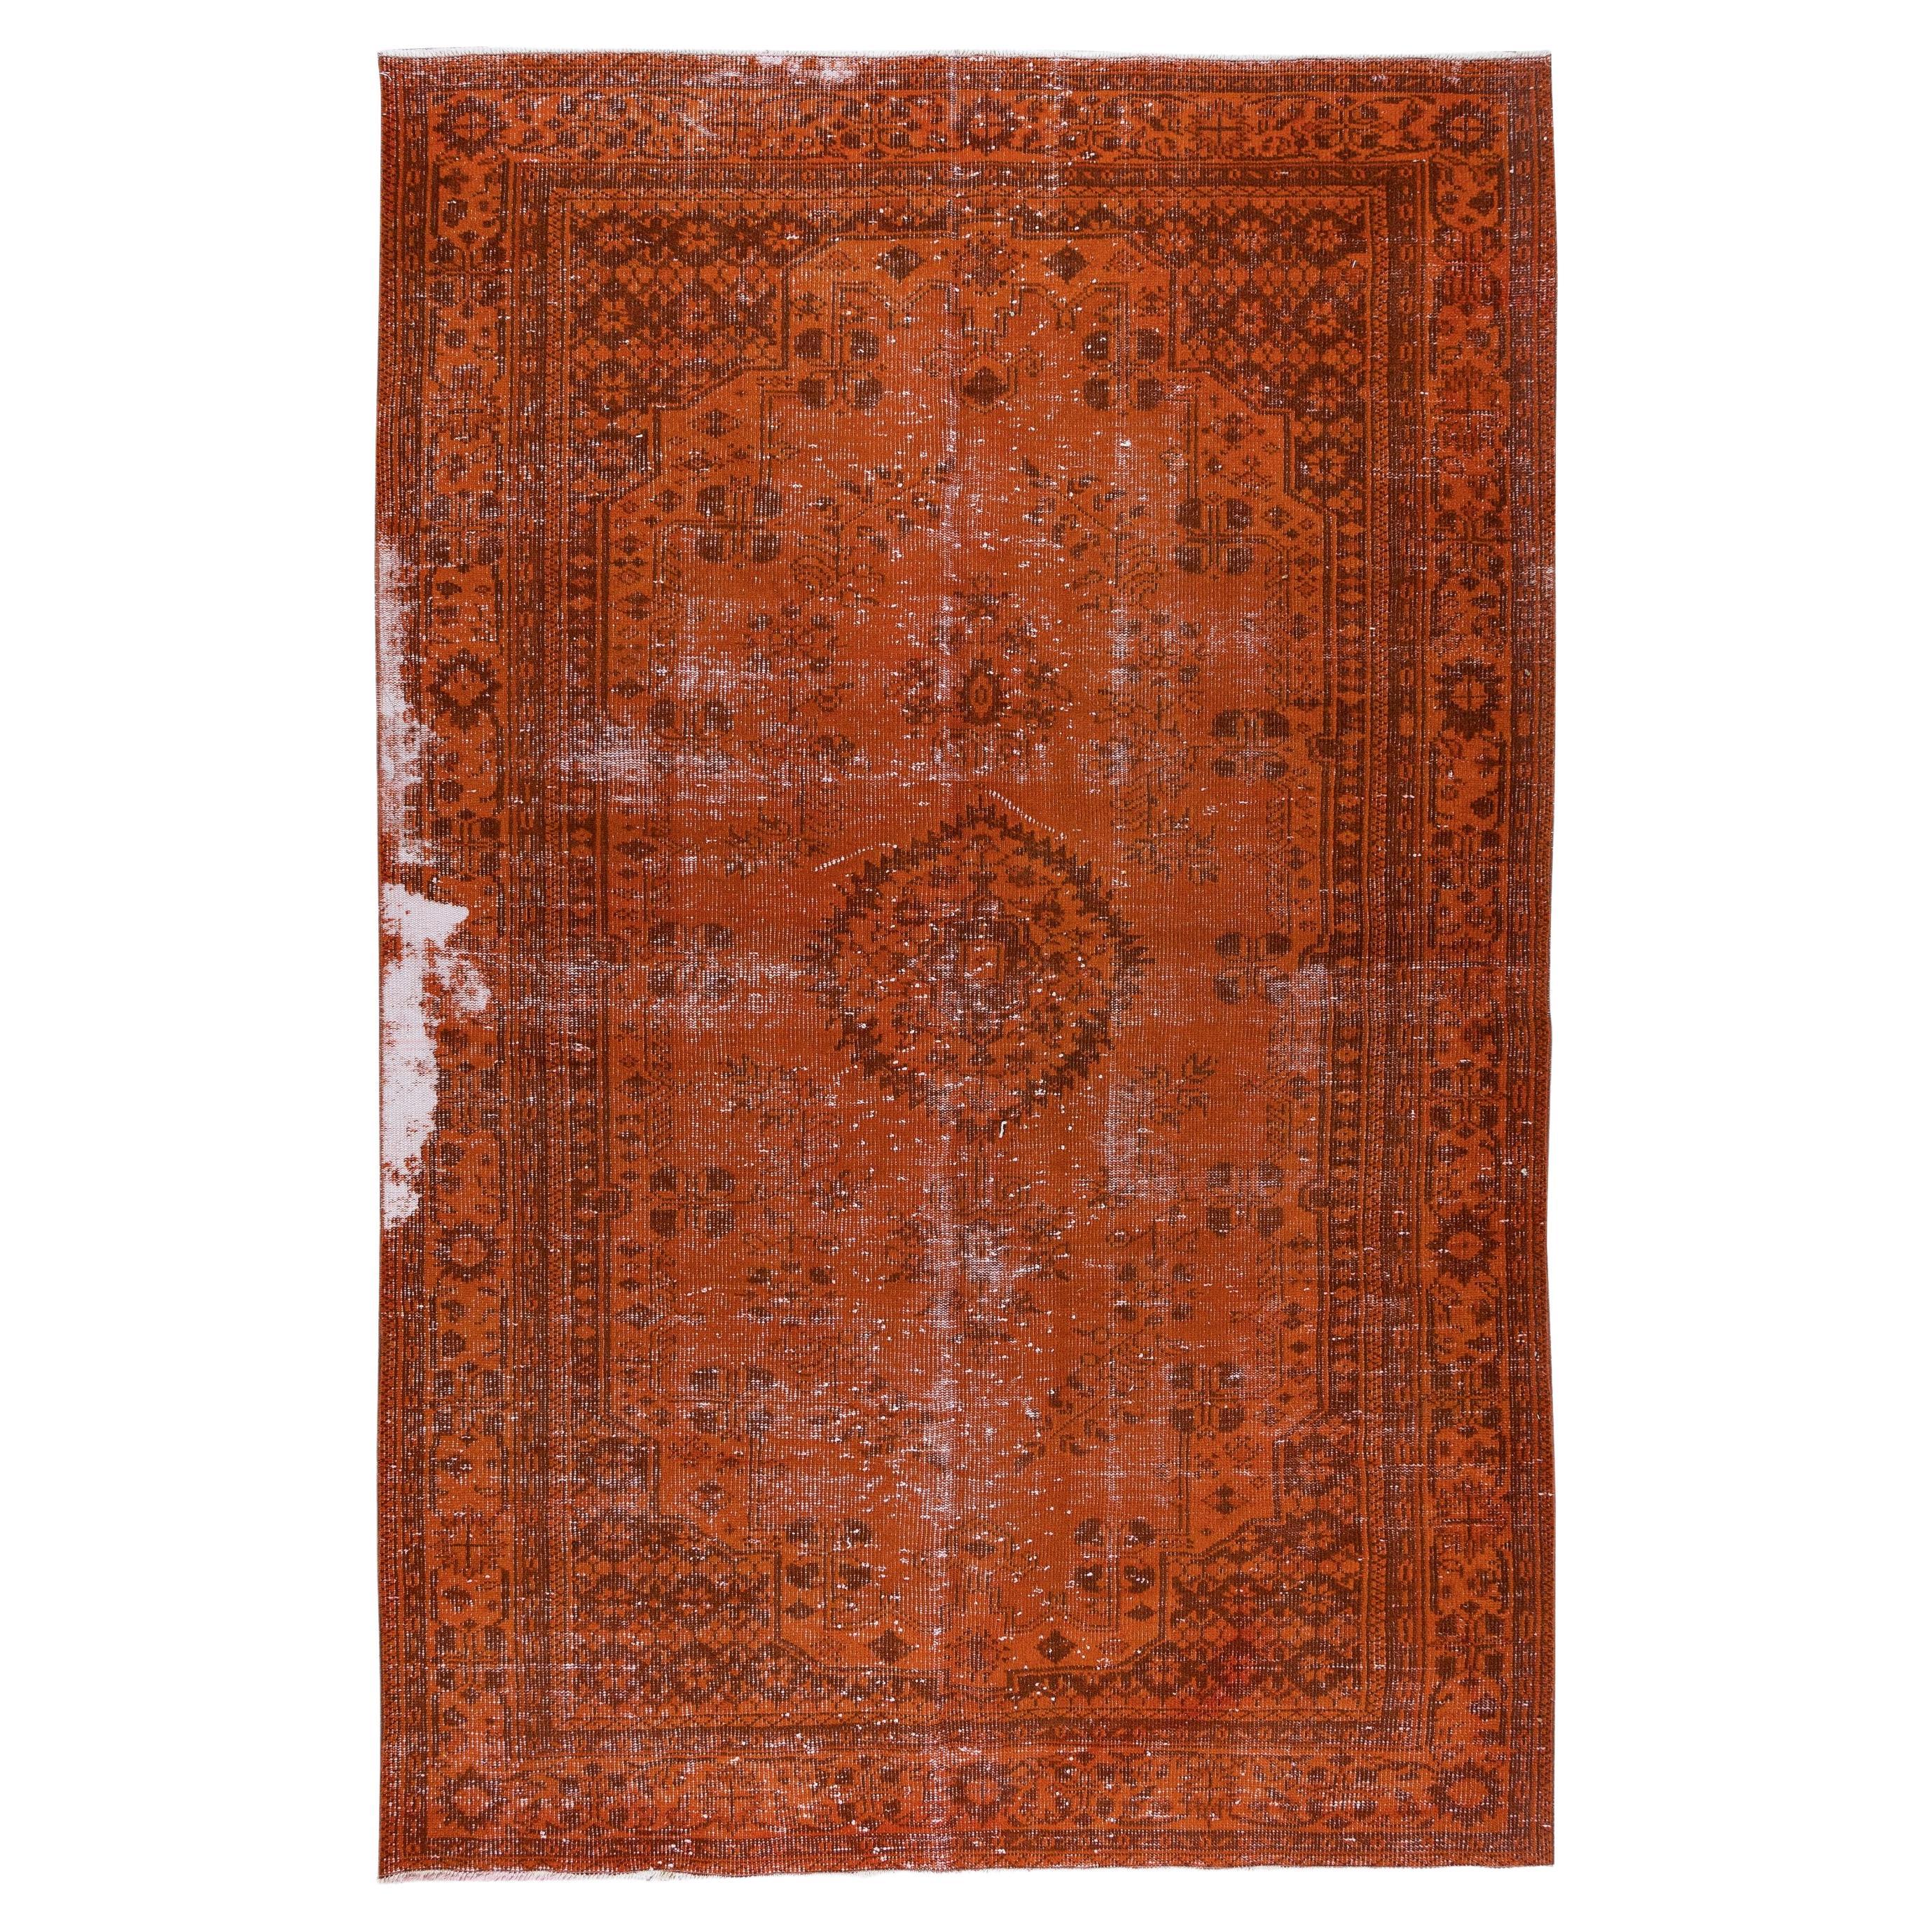 6.2x9.8 Ft Orange Vintage Handgefertigter türkischer Wollteppich, moderner Teppich im Used-Look